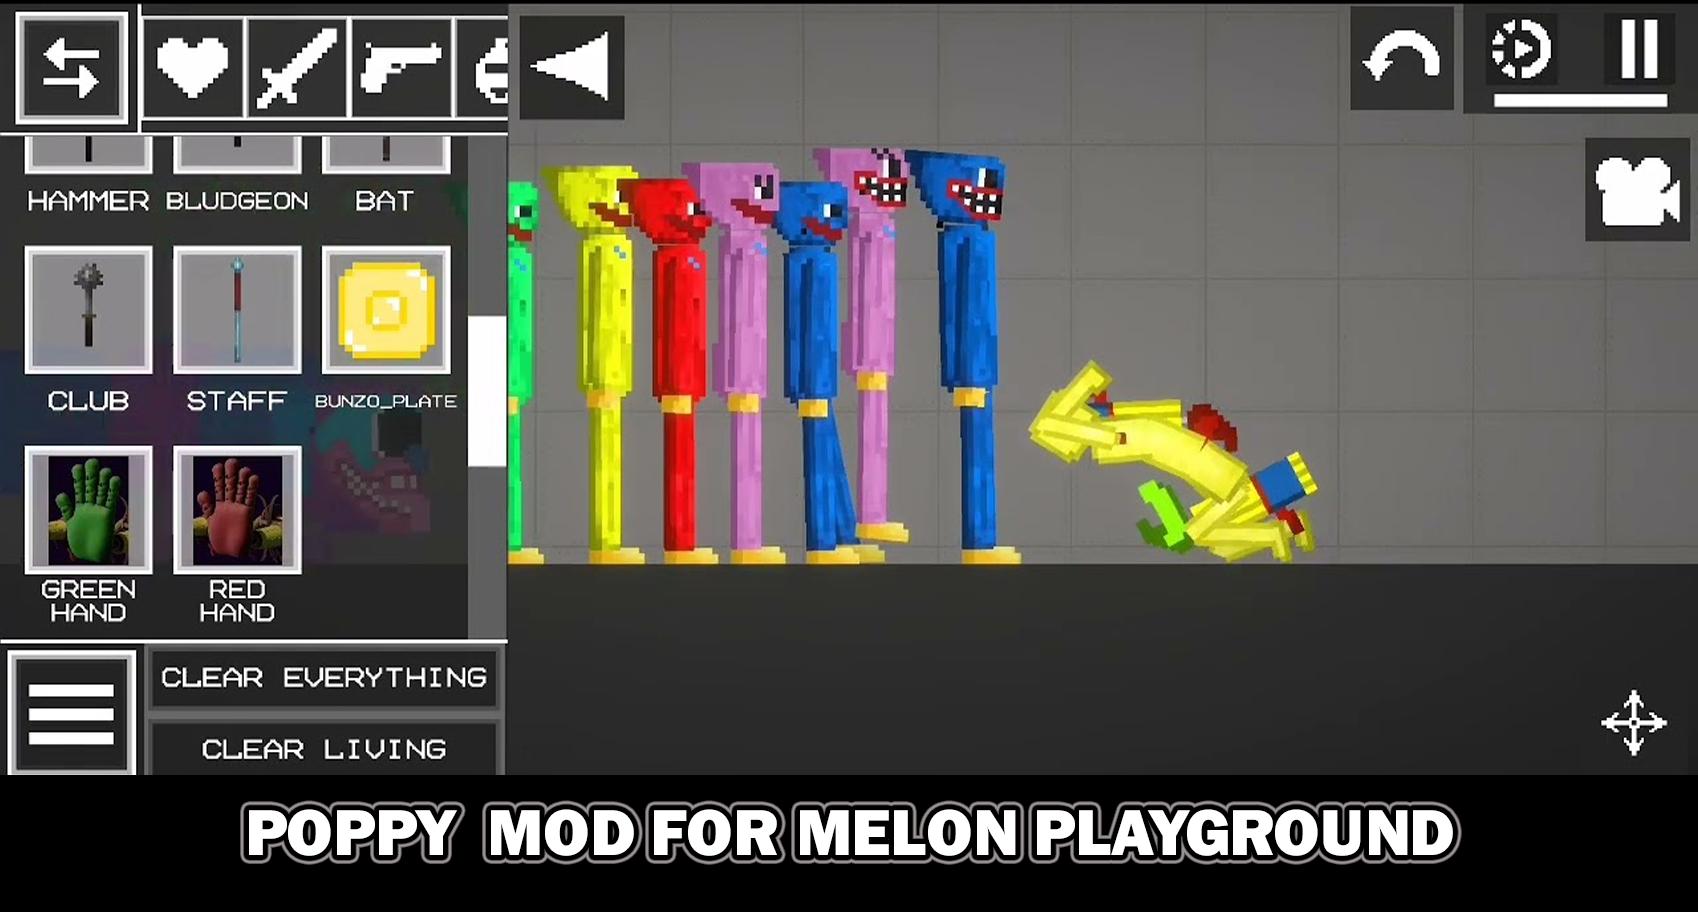 Мод на мелон плейграунд поппи плейтайм. Chainsaw Mods for Melon Playground. Мелон плейграунд мод Poppy Playtime Chapter 2. Мод на Мелон плейграунд на Поппи Плейтайм 3.